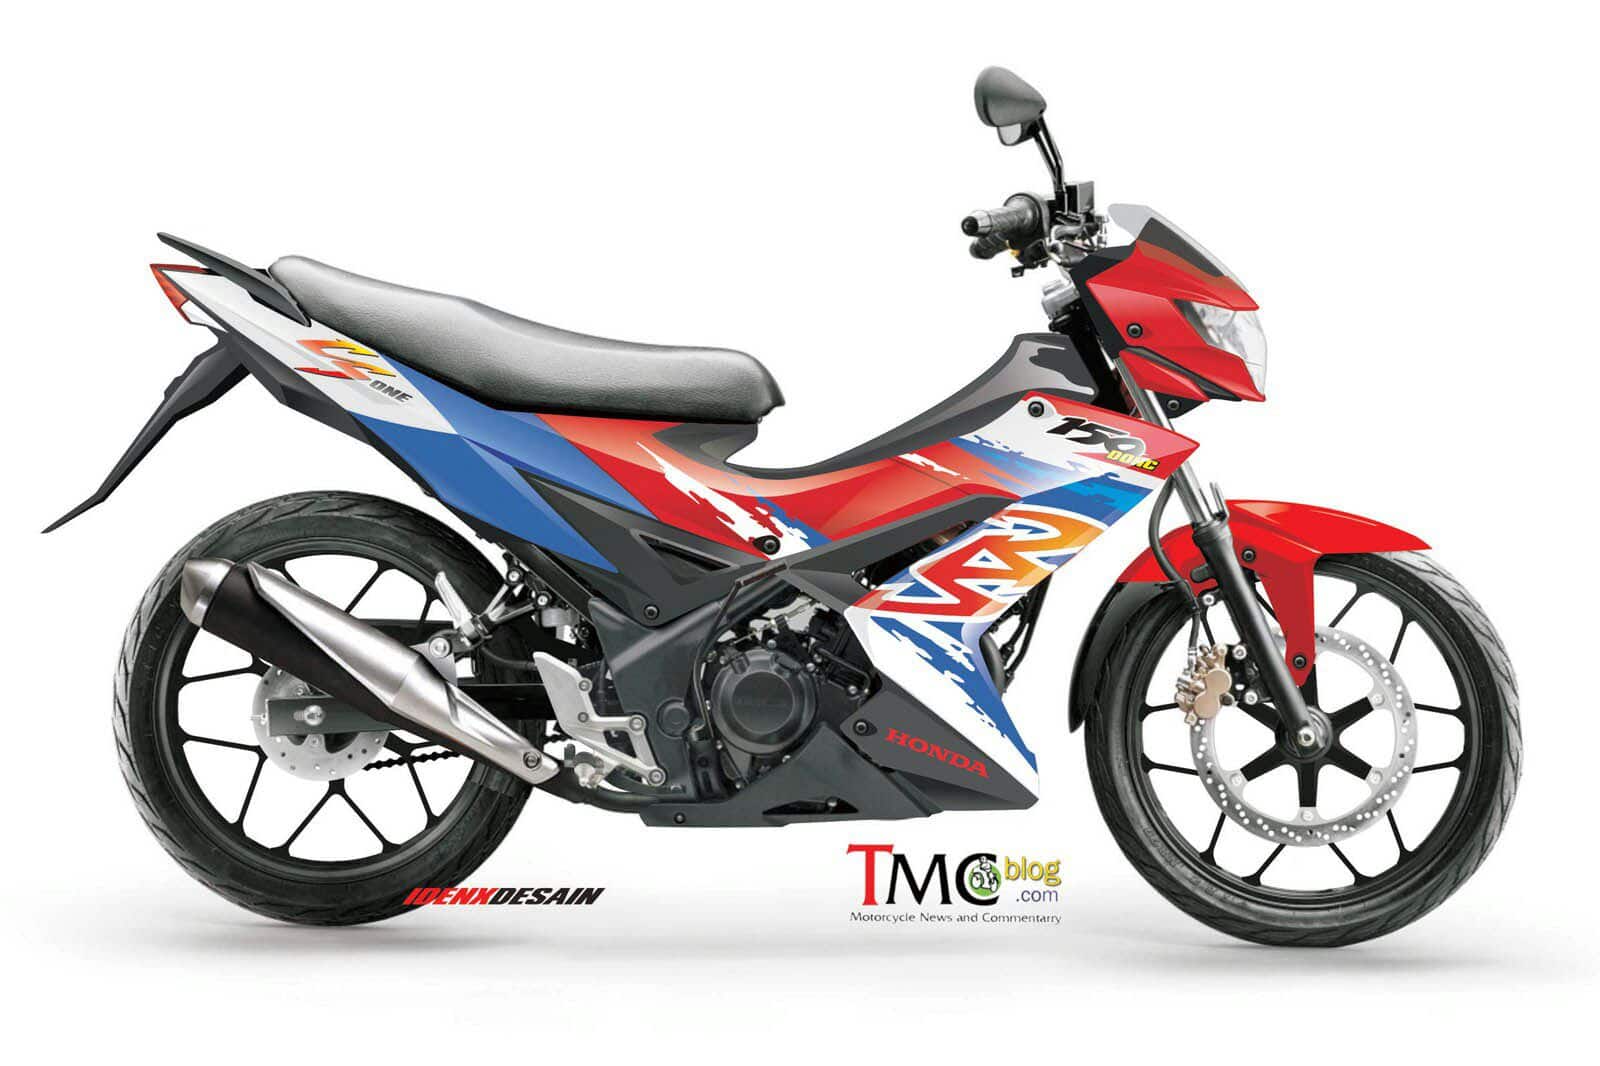 Gambar Sepeda Motor New Sonic 150r Terkeren Gentong Modifikasi